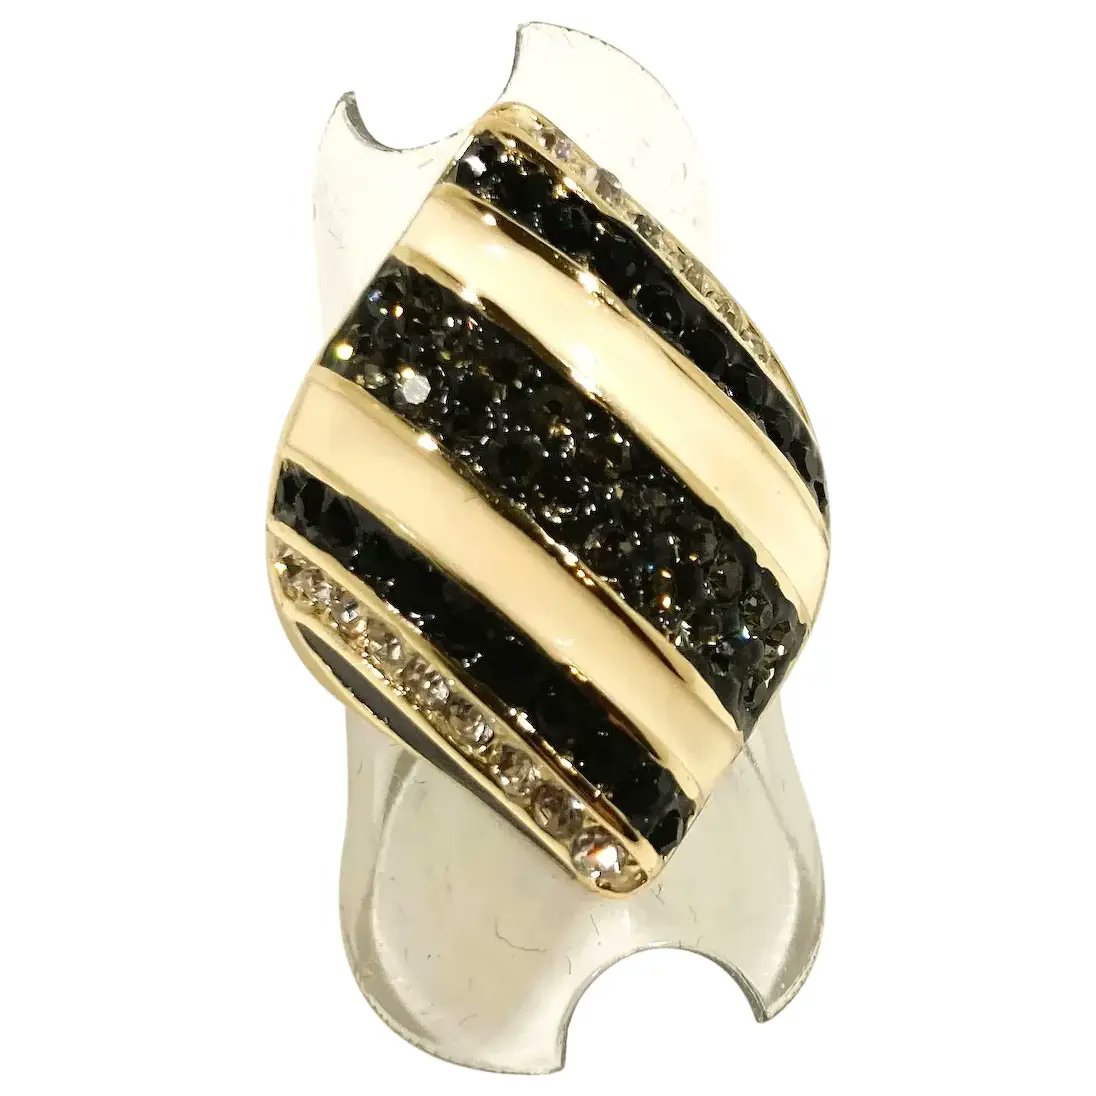 Akkad Diamond Shaped Striped Enameled Rhinestone Ring Size 7
#rubylane #vintage #jewelry #rings #rhinestones #designer #hautecouture #giftideas 
#jewelryaddict #vintagebeginshere 
rubylane.com/item/136230-E1…